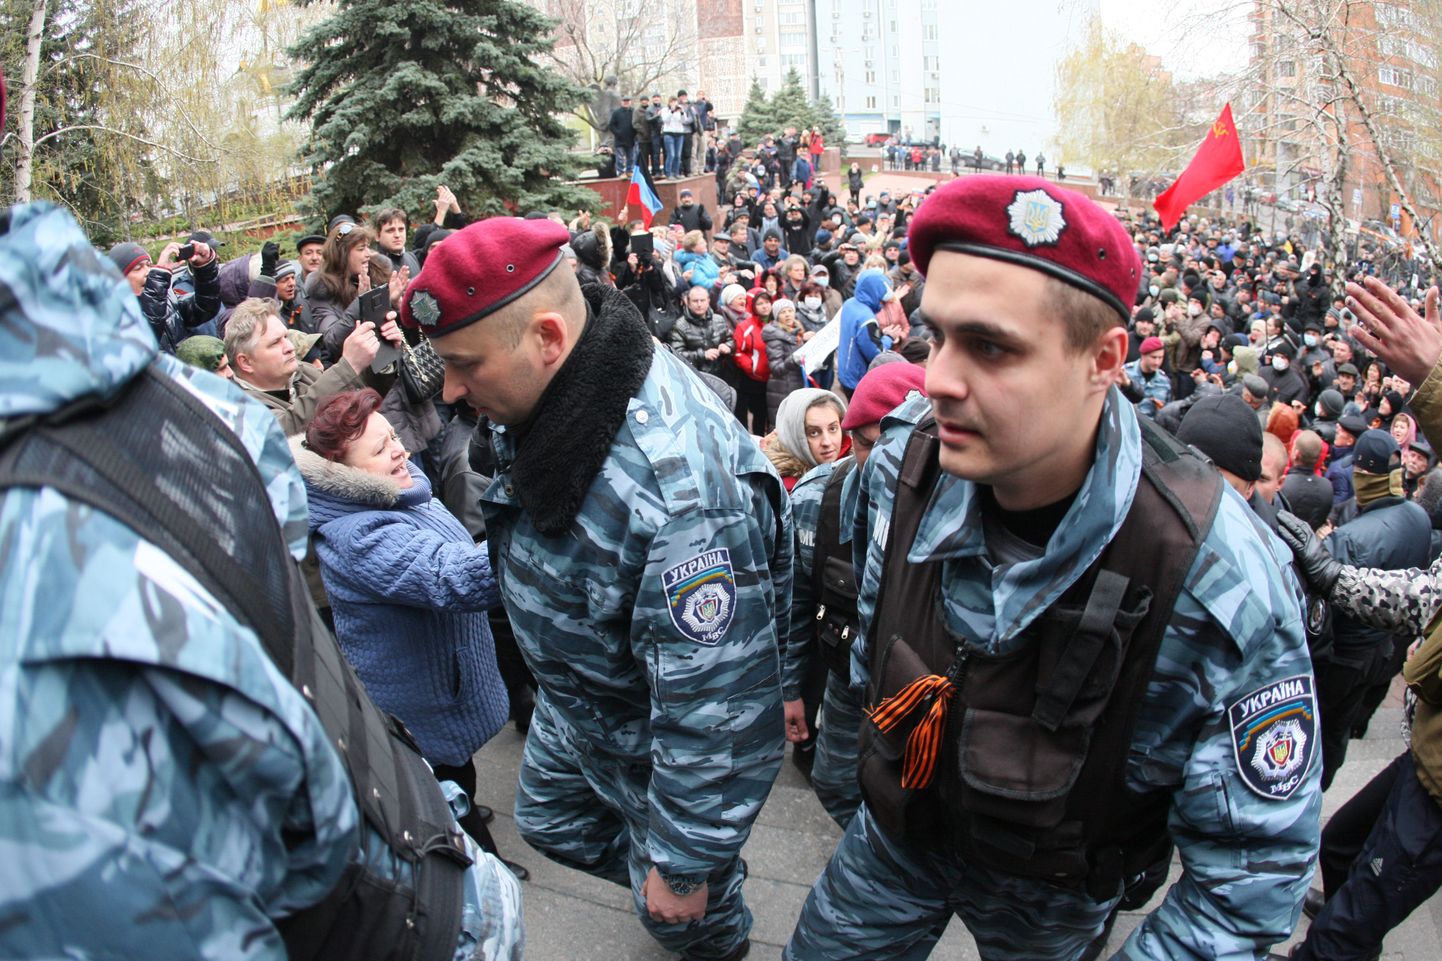 МВД Украины на Пасху обратилось к бывшим беркутовцам - бойцы милицейского спецназа названы "элитой сил правопорядка", их призывают забыть о былых распрях, "примириться и объединиться".